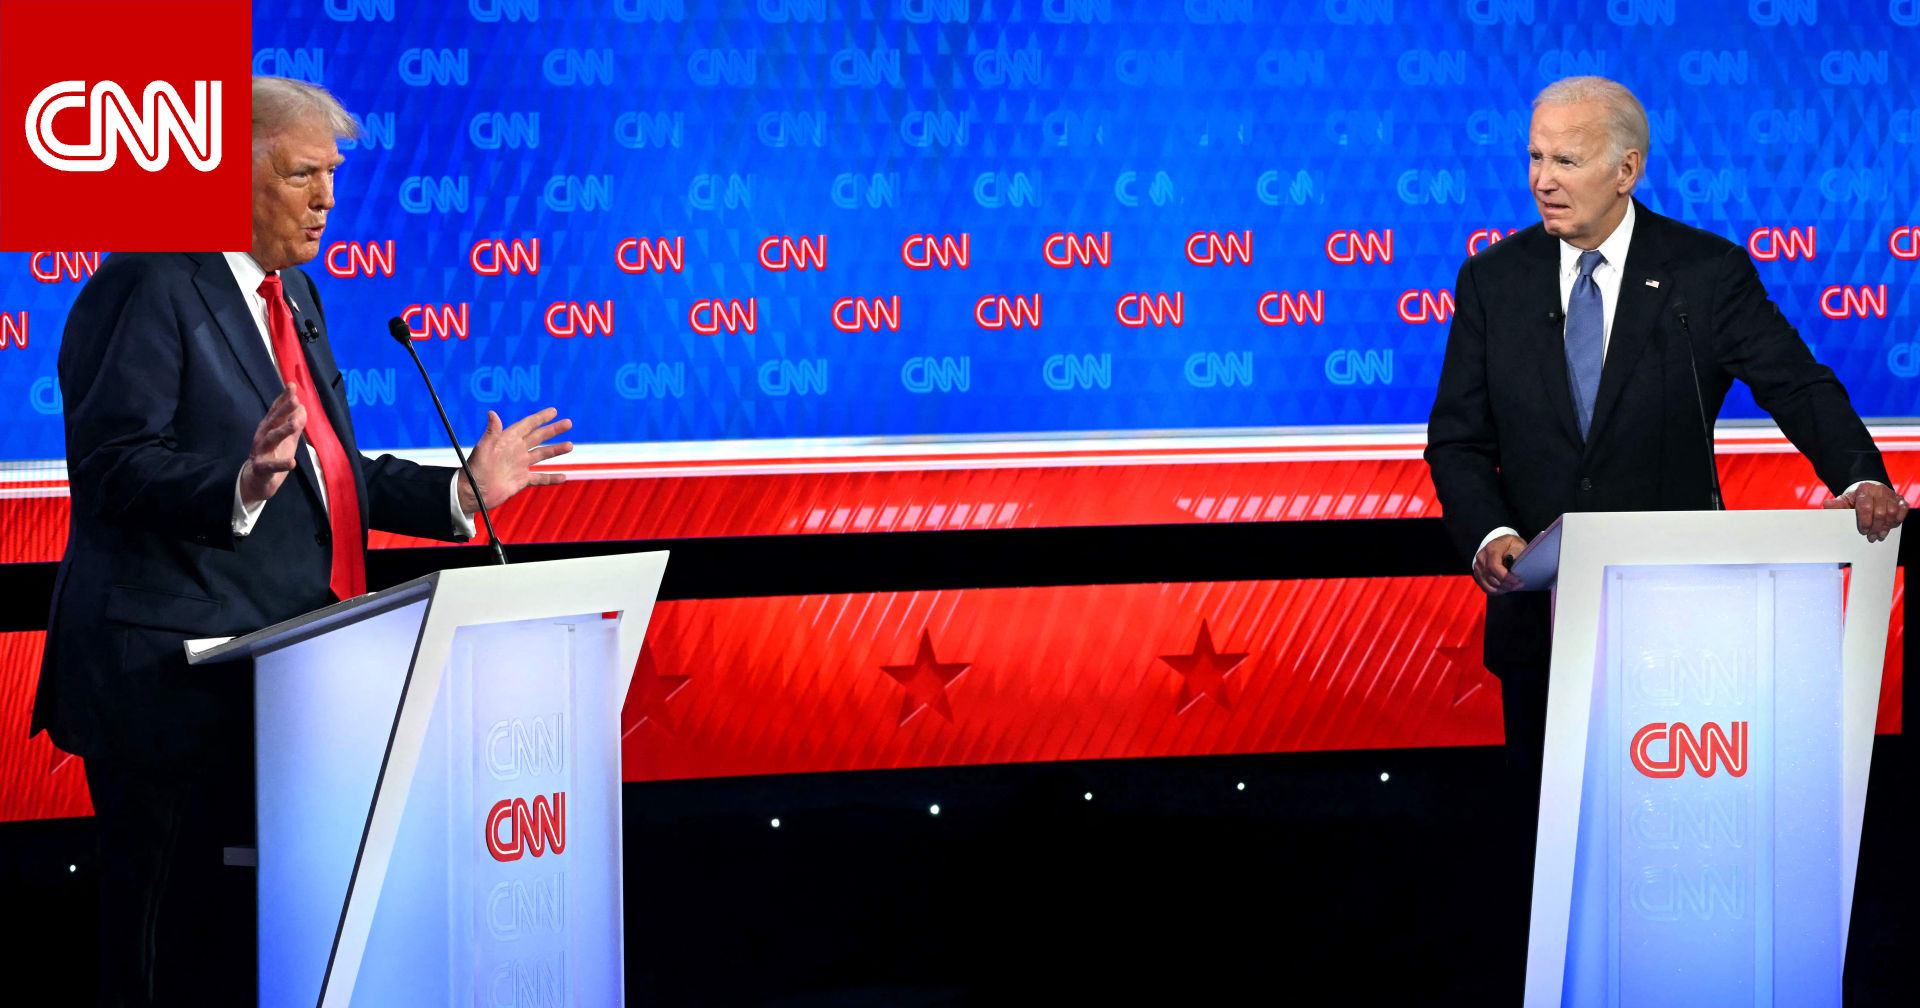 فيديو لغة الجسد وتعابير الوجه بين بايدن وترامب بمناظرة CNN تثير تفاعلا